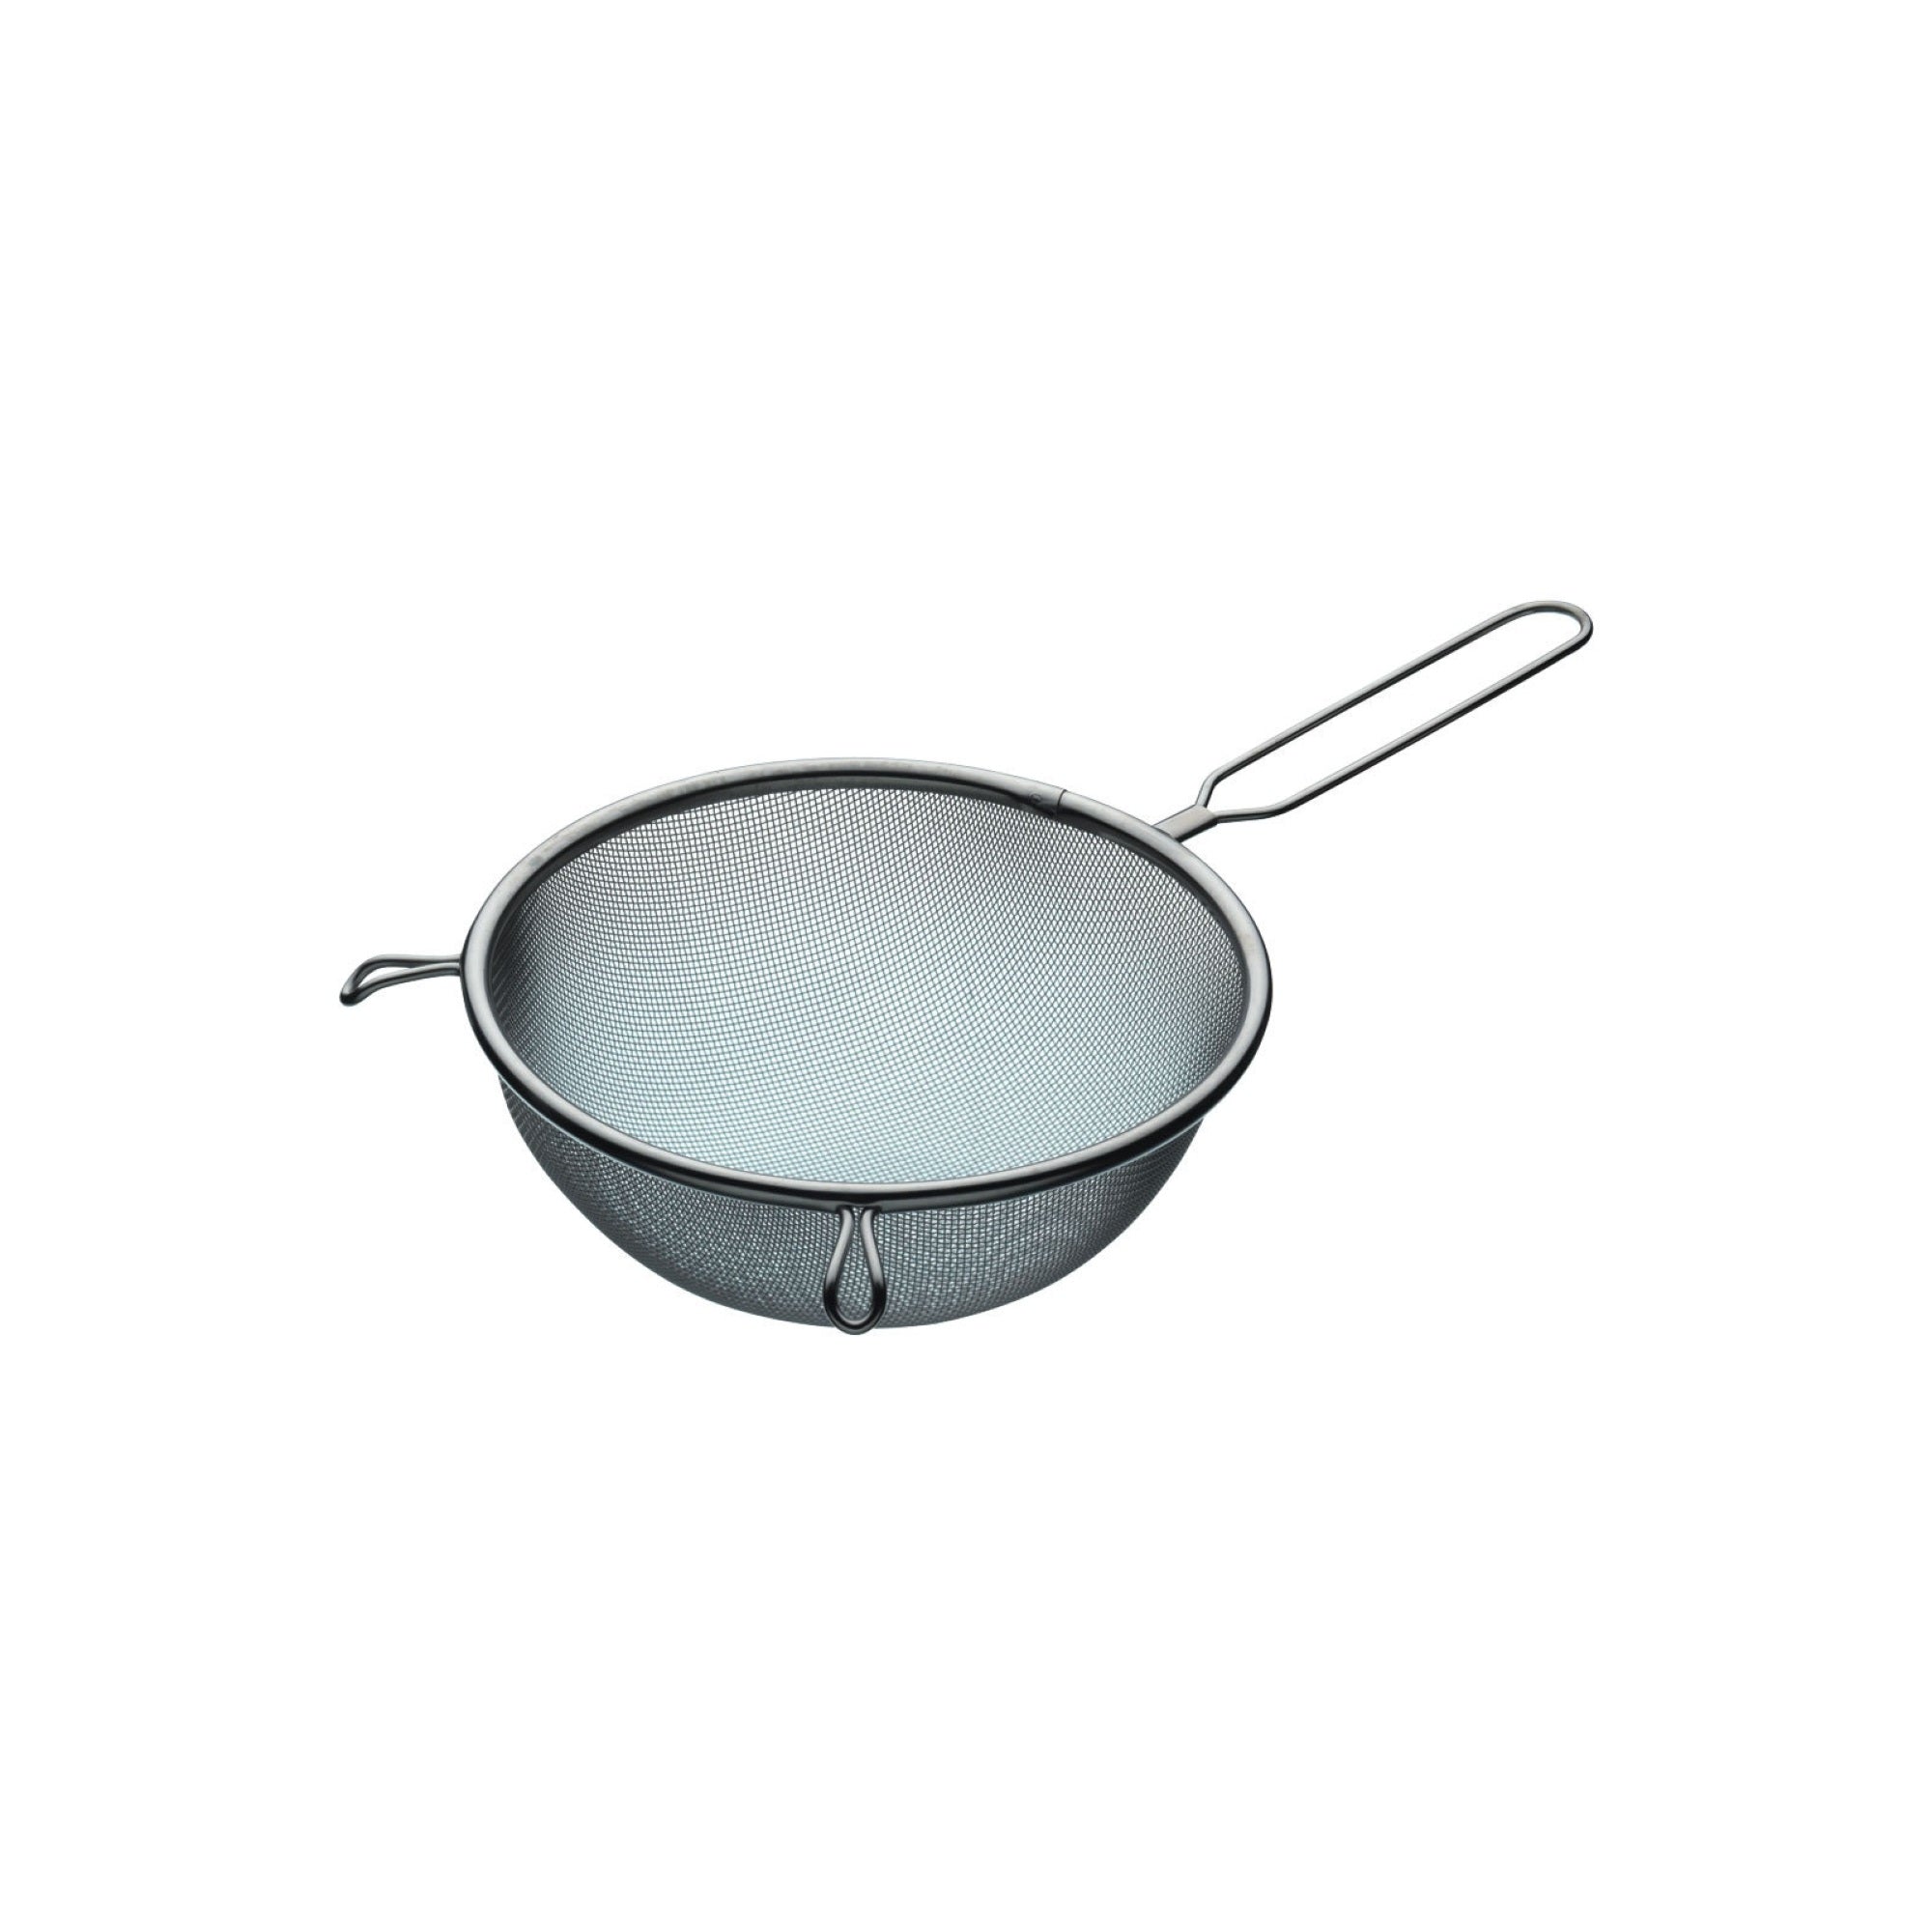 KitchenCraft Stainless Steel 18cm Round Sieve - The Cooks Cupboard Ltd